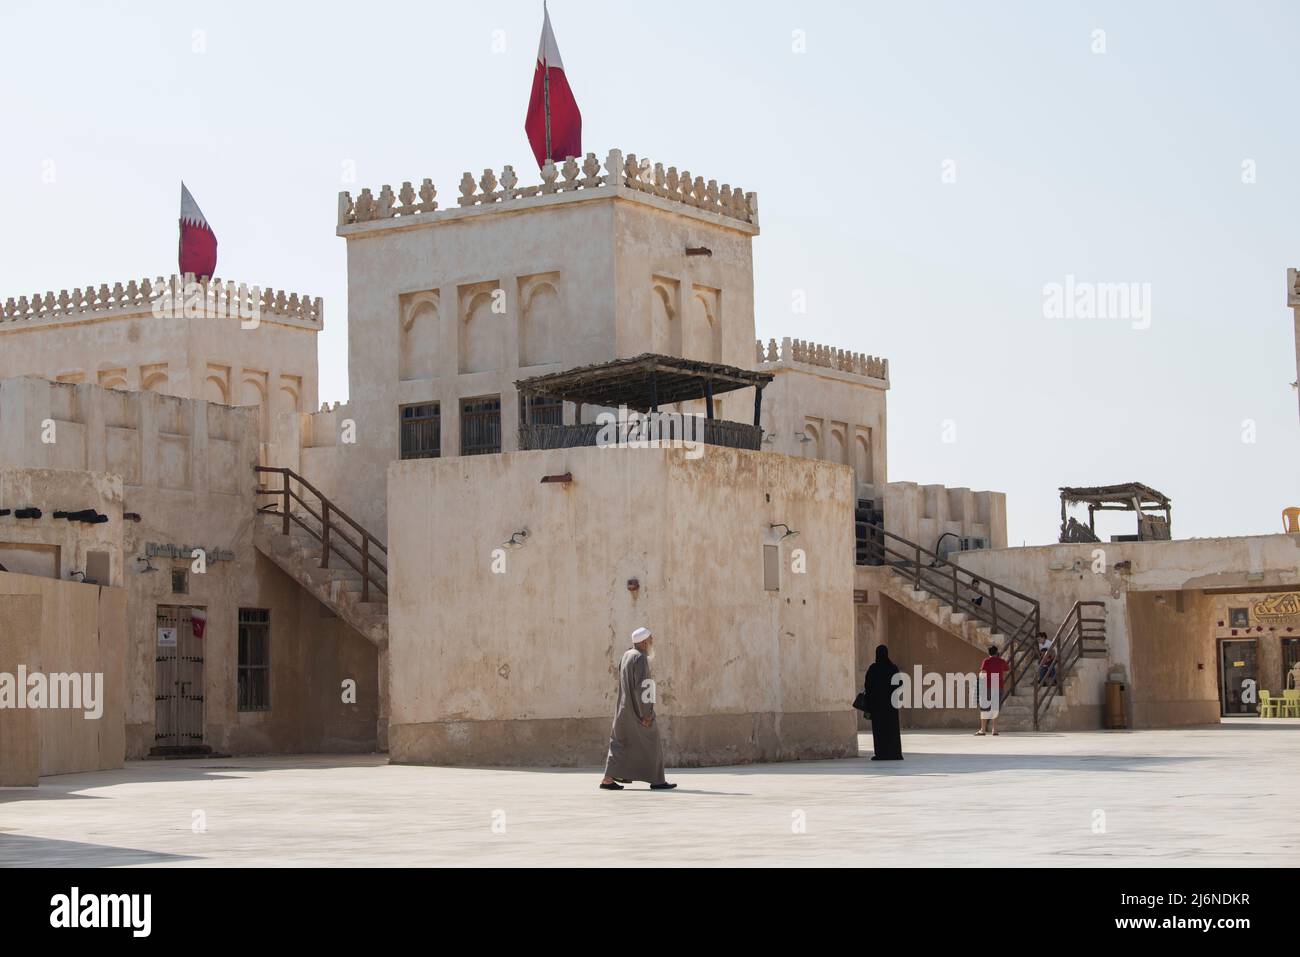 Doha ,Qatar - Febbraio 01,2020 : nuovo souk al Wakrah lungomare con le sue case tradizionali e la gente del posto godendo a piedi. Foto Stock